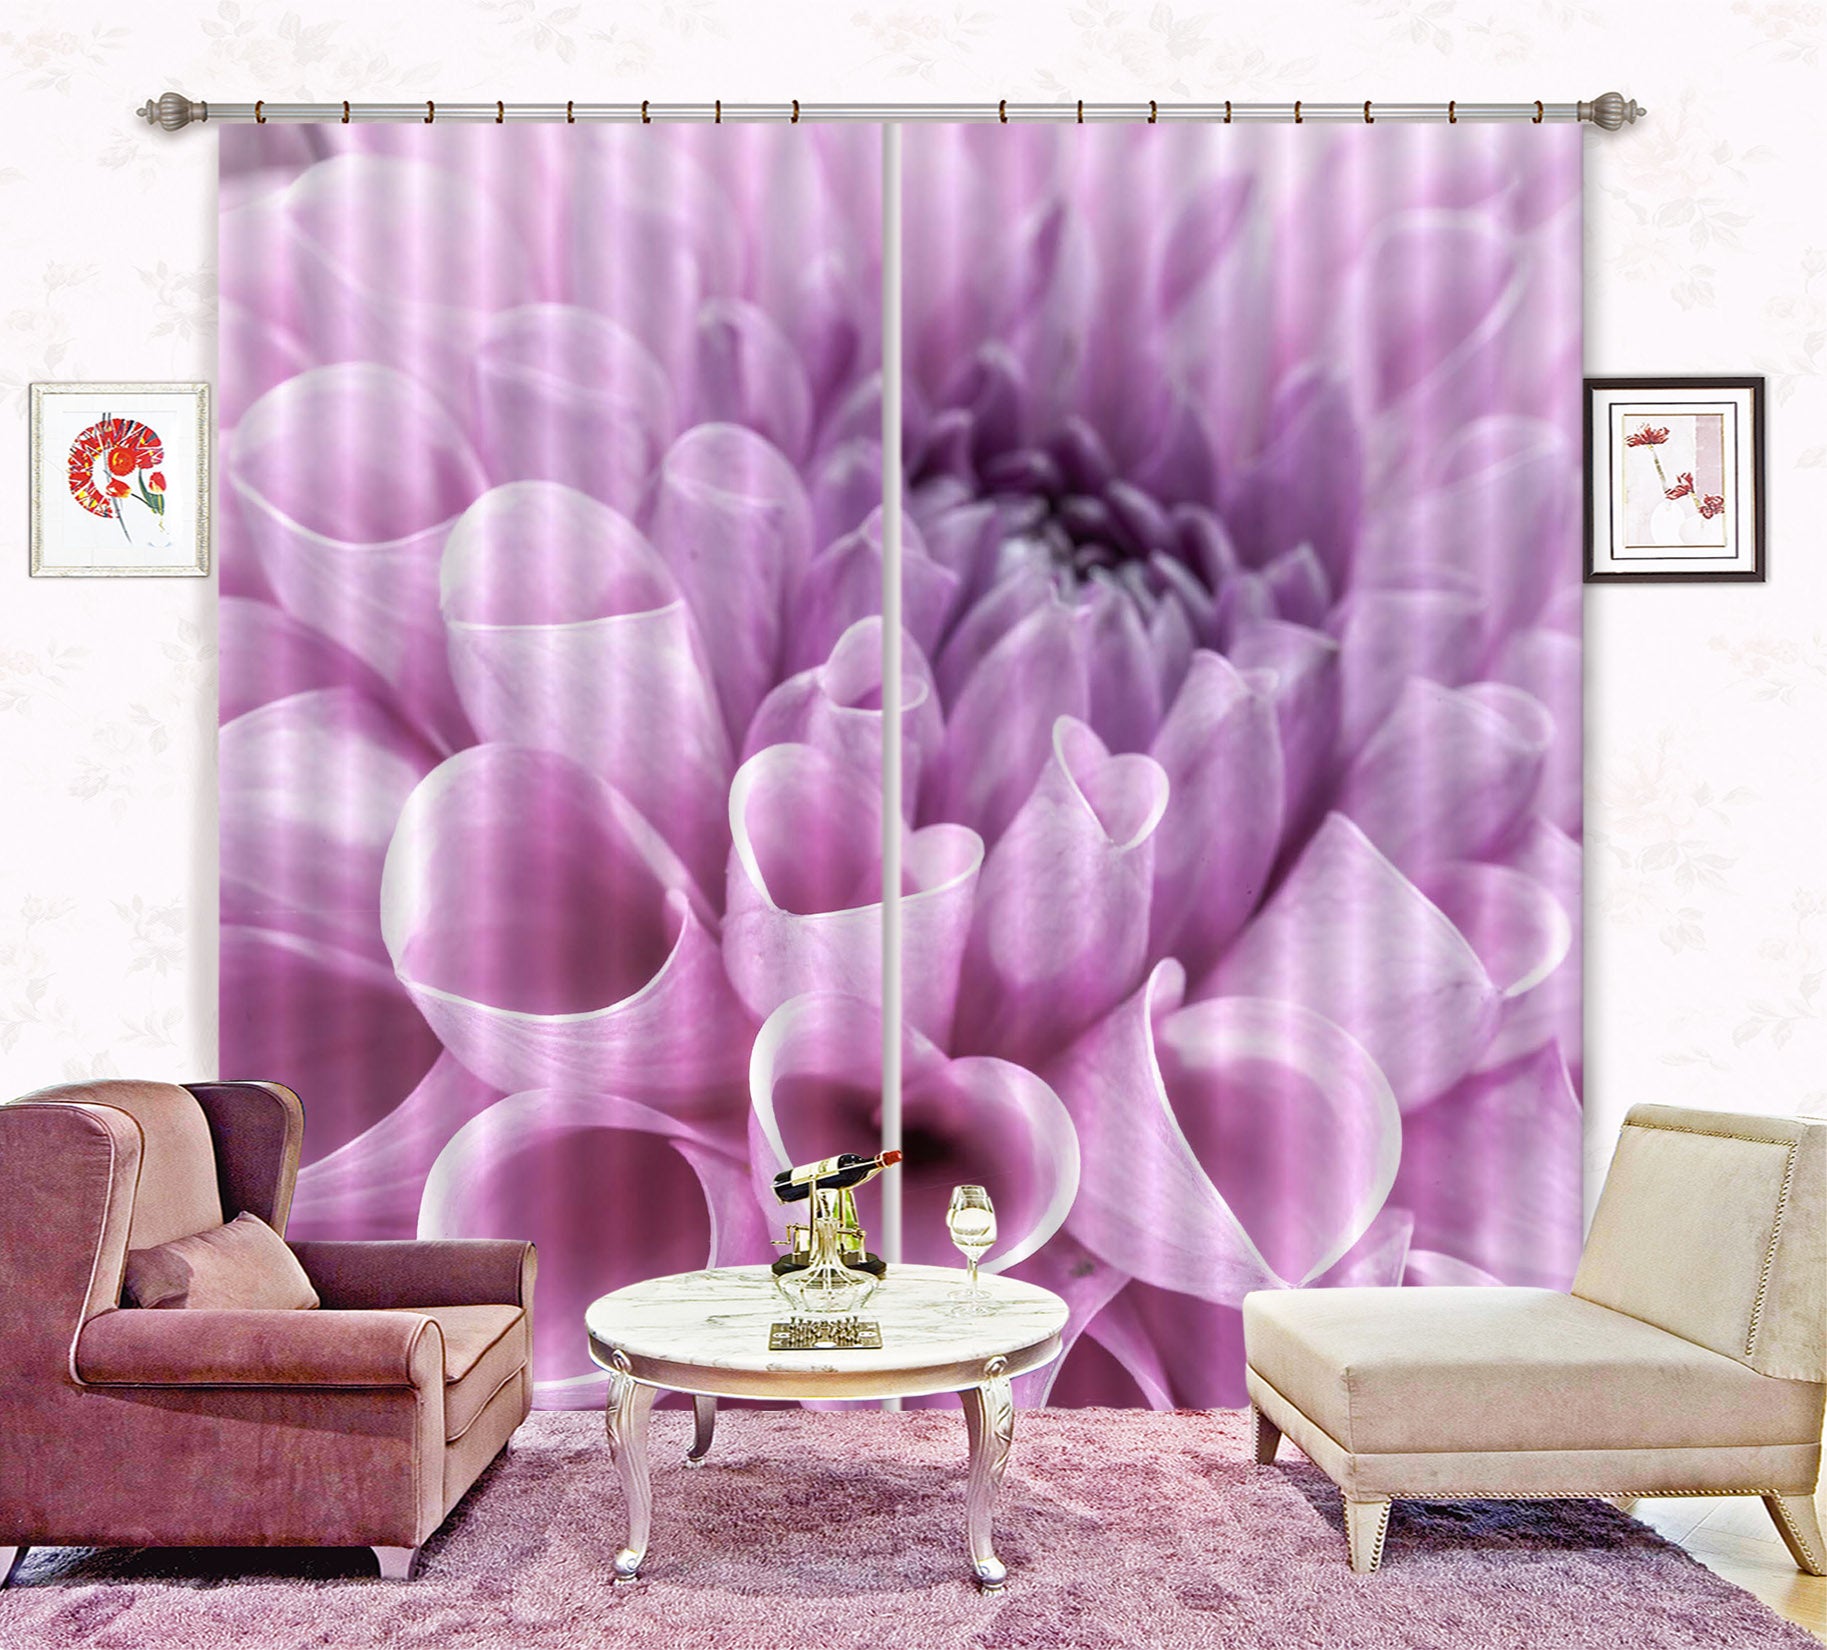 3D Purple Flowers 6330 Assaf Frank Curtain Curtains Drapes